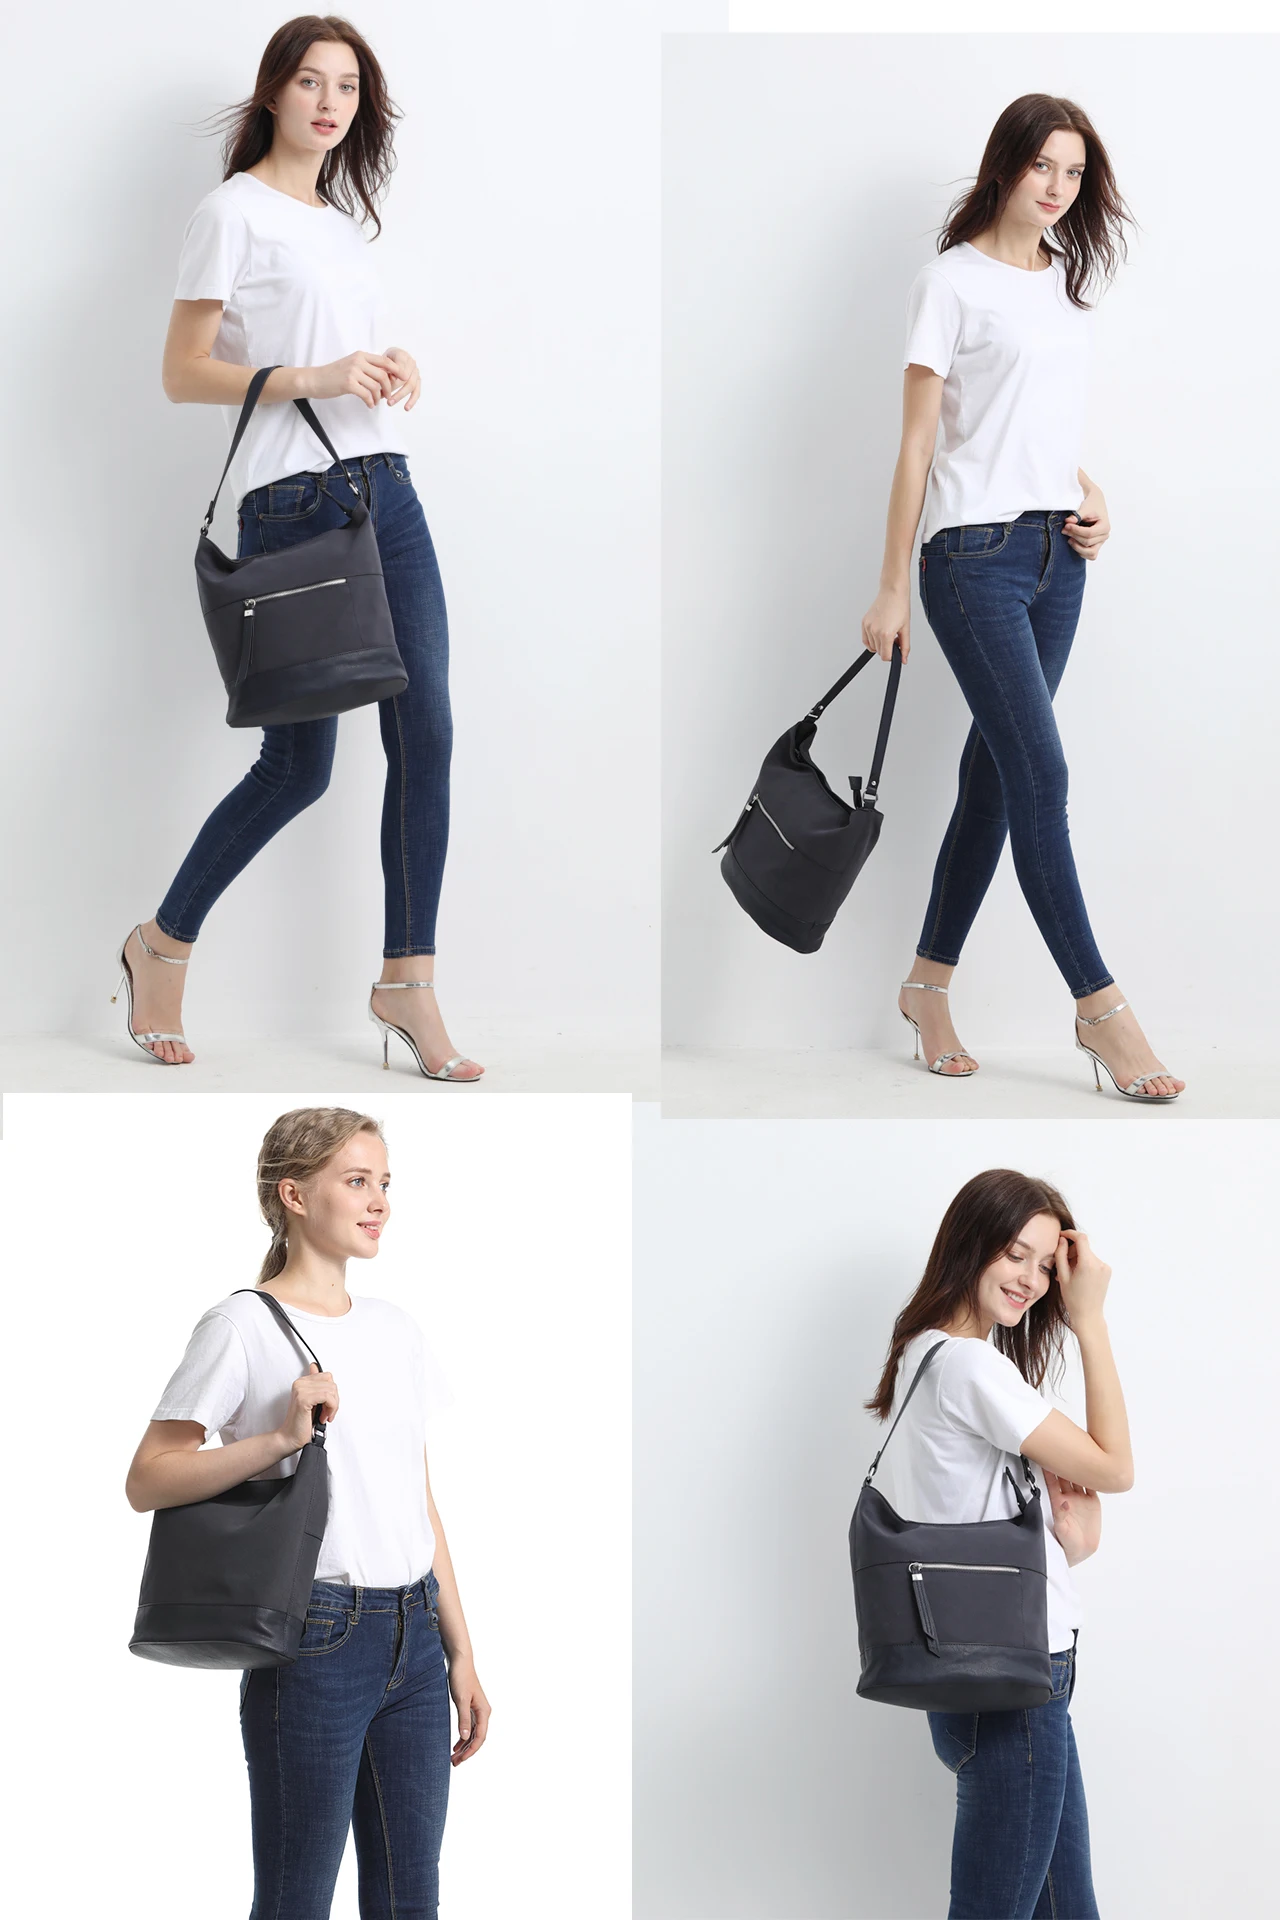 Сумка для женщин сумка на плечо Женская Повседневная стильная сумка-хобо однотонная мягкая Сумочка Сумка Yangbuck простая пассажирская сумка | VK1002